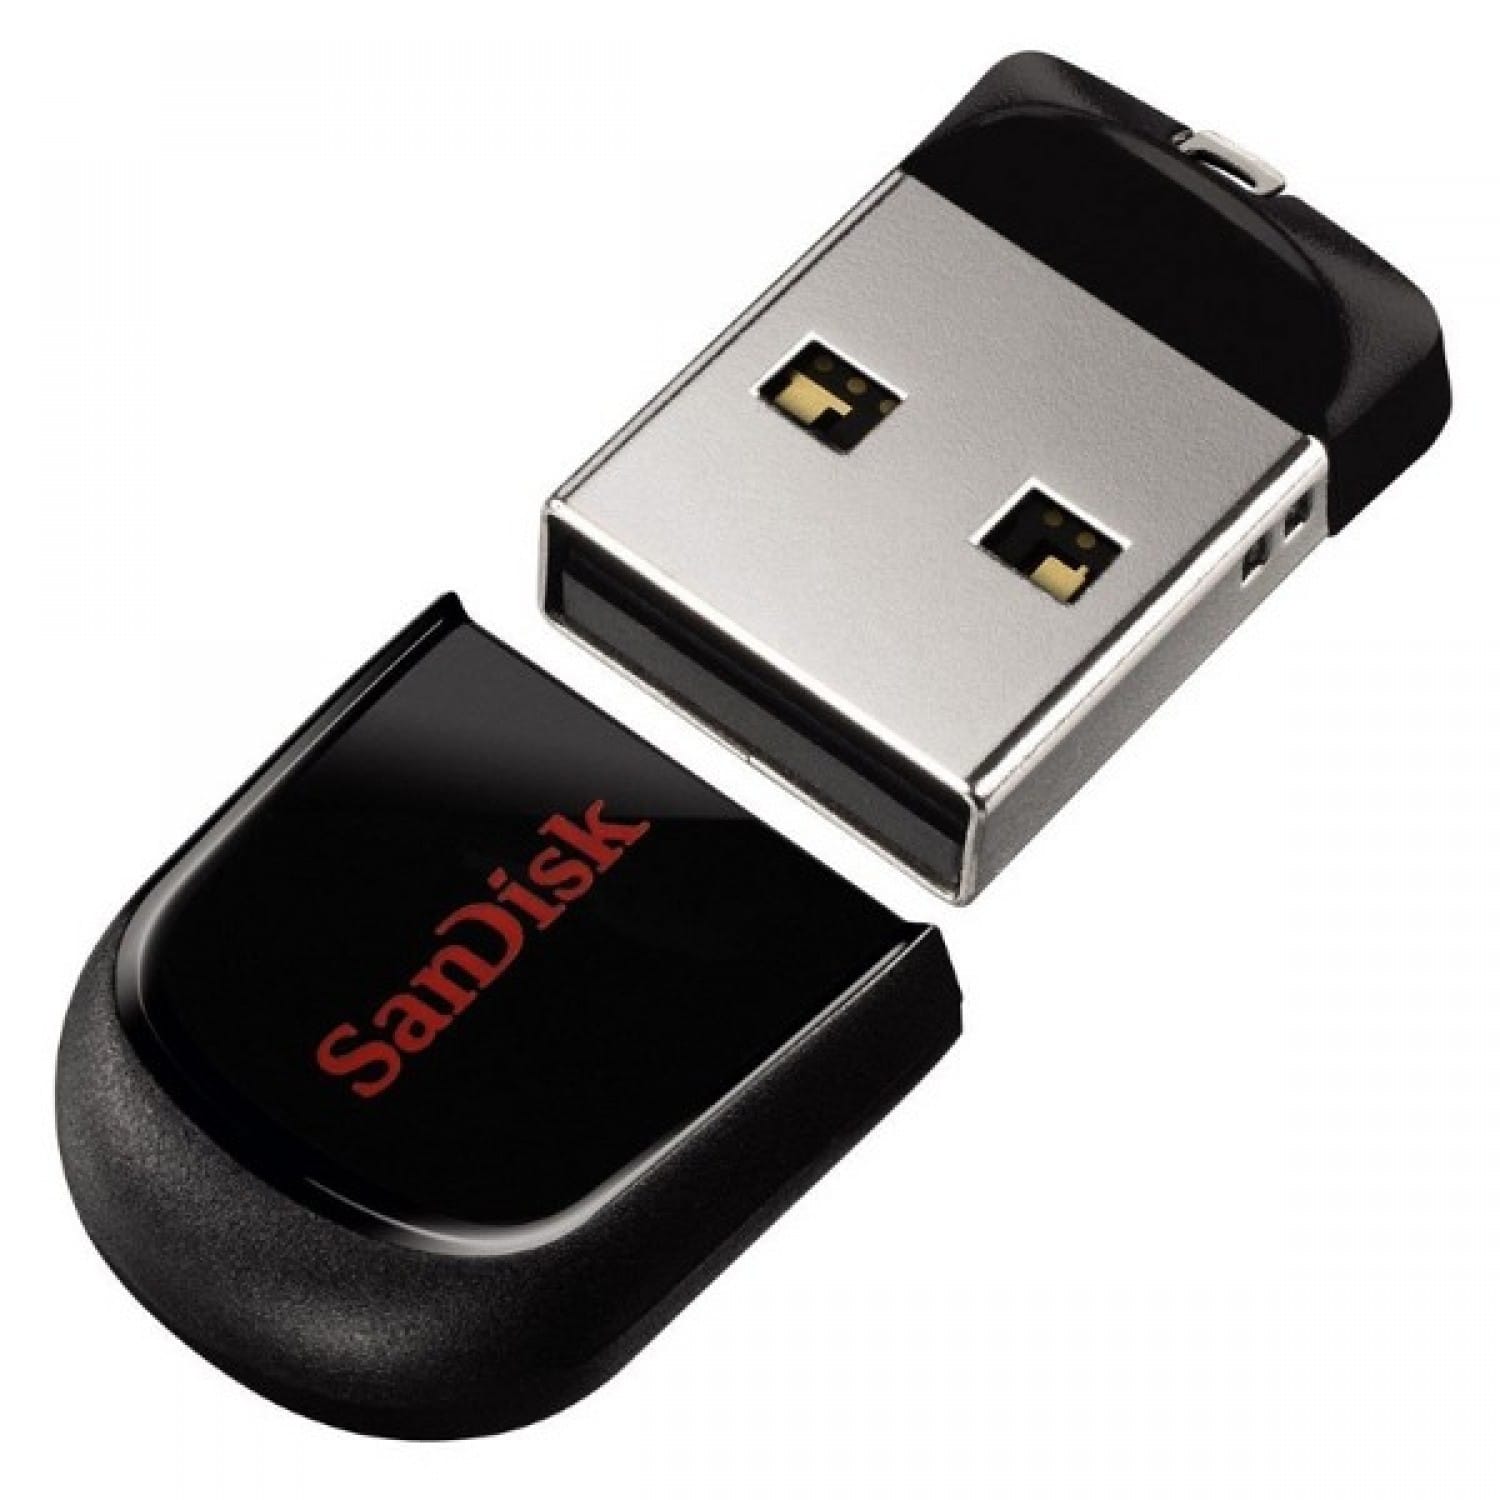  Cl   USB  2 0 SANDISK Cruzer Fit 16 GB